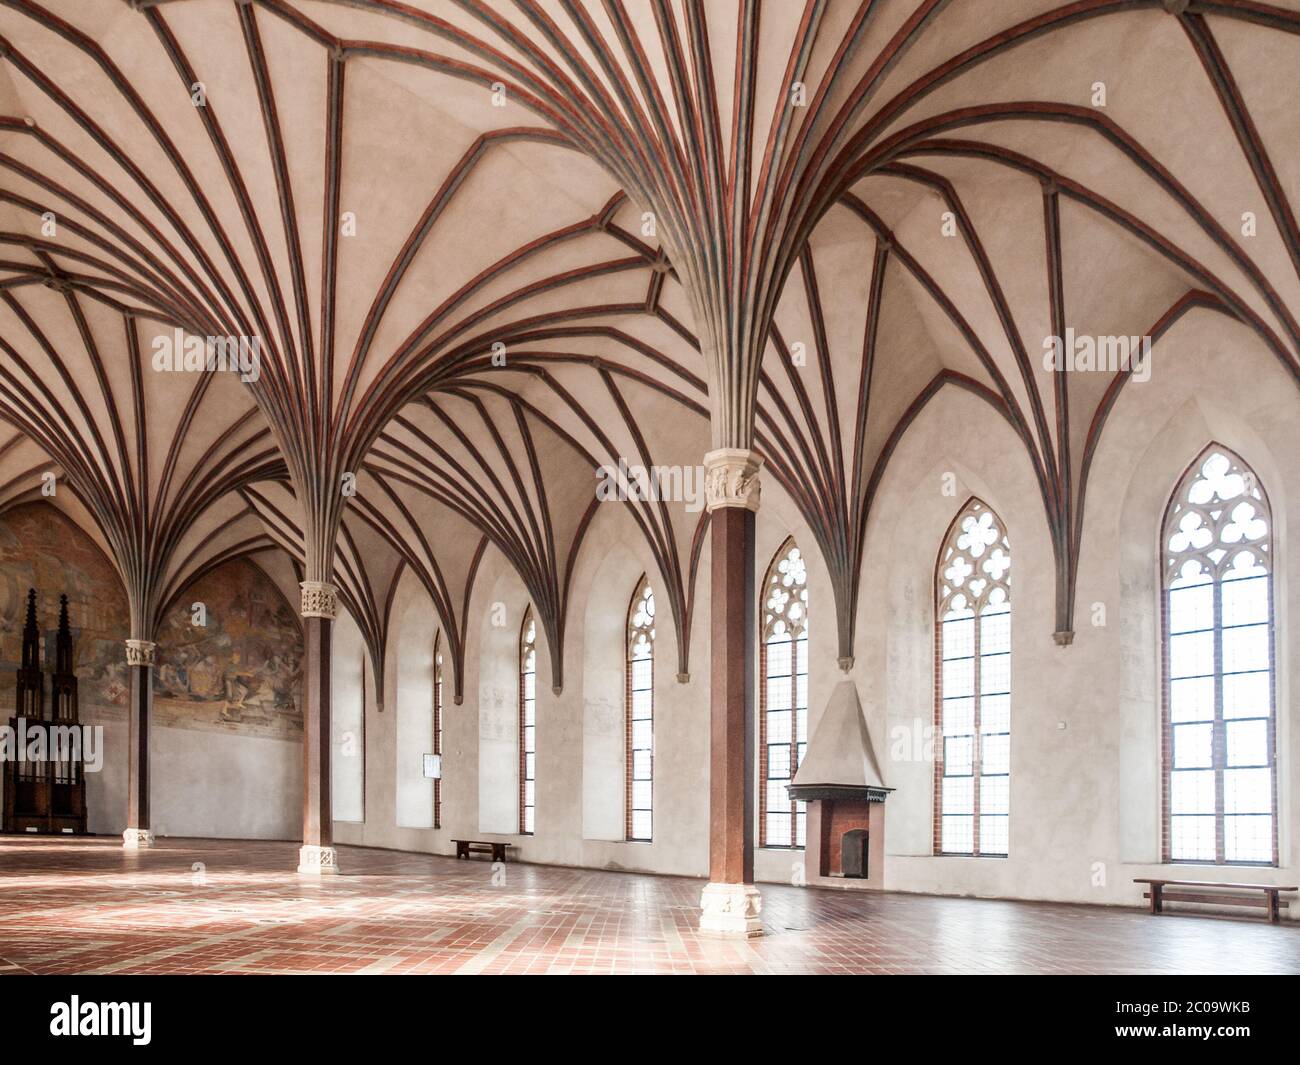 Le Grand réfectoire, la plus grande salle du château de Malbork avec un magnifique plafond de voûte gothique, Pologne. Banque D'Images